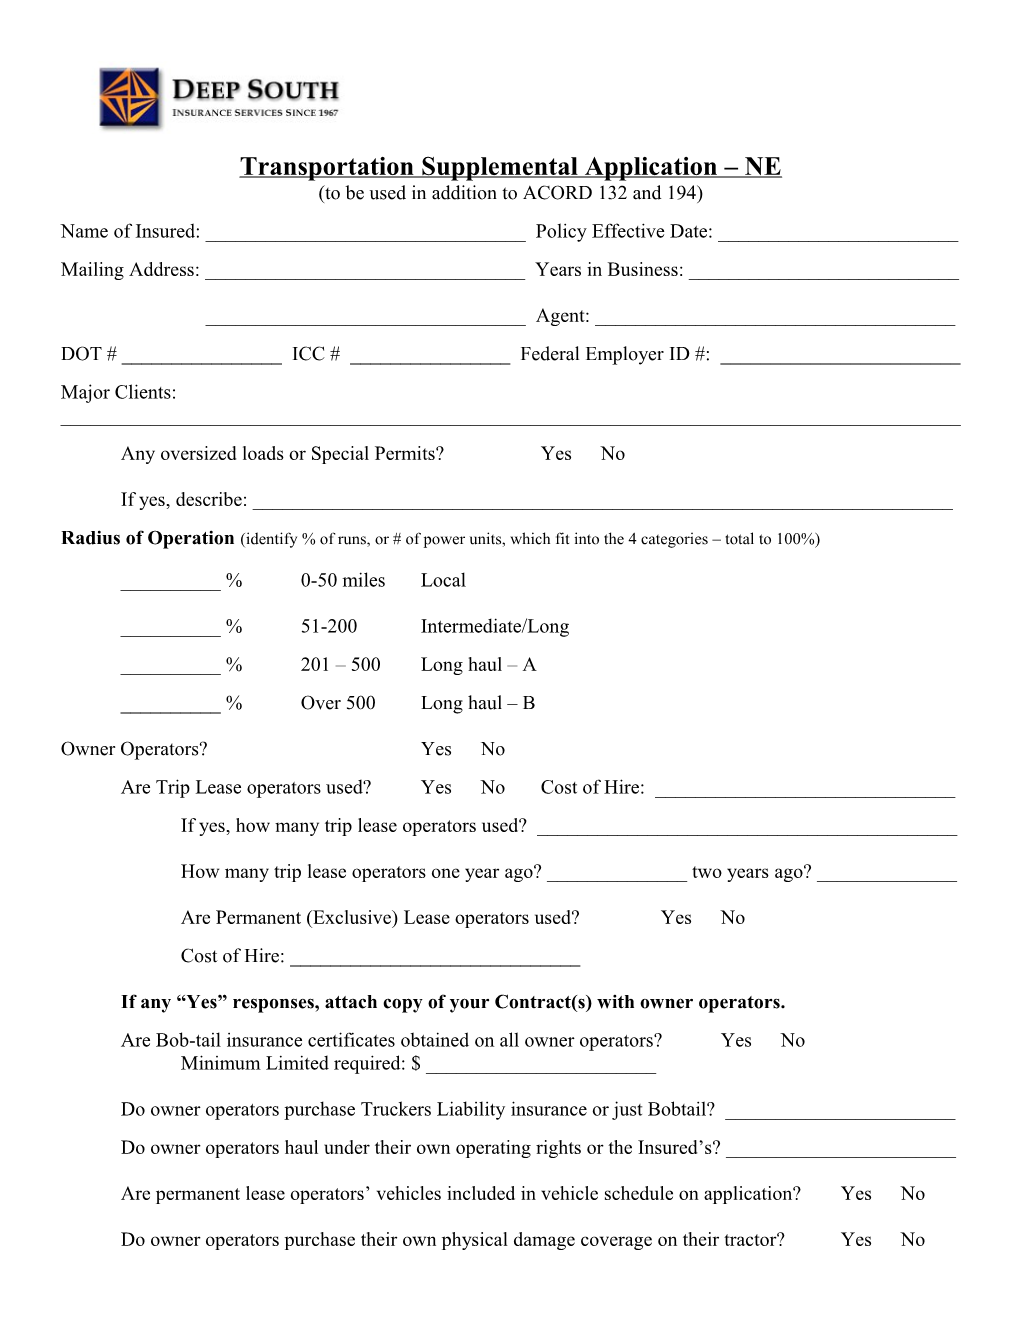 Transportation Supplemental Application NE